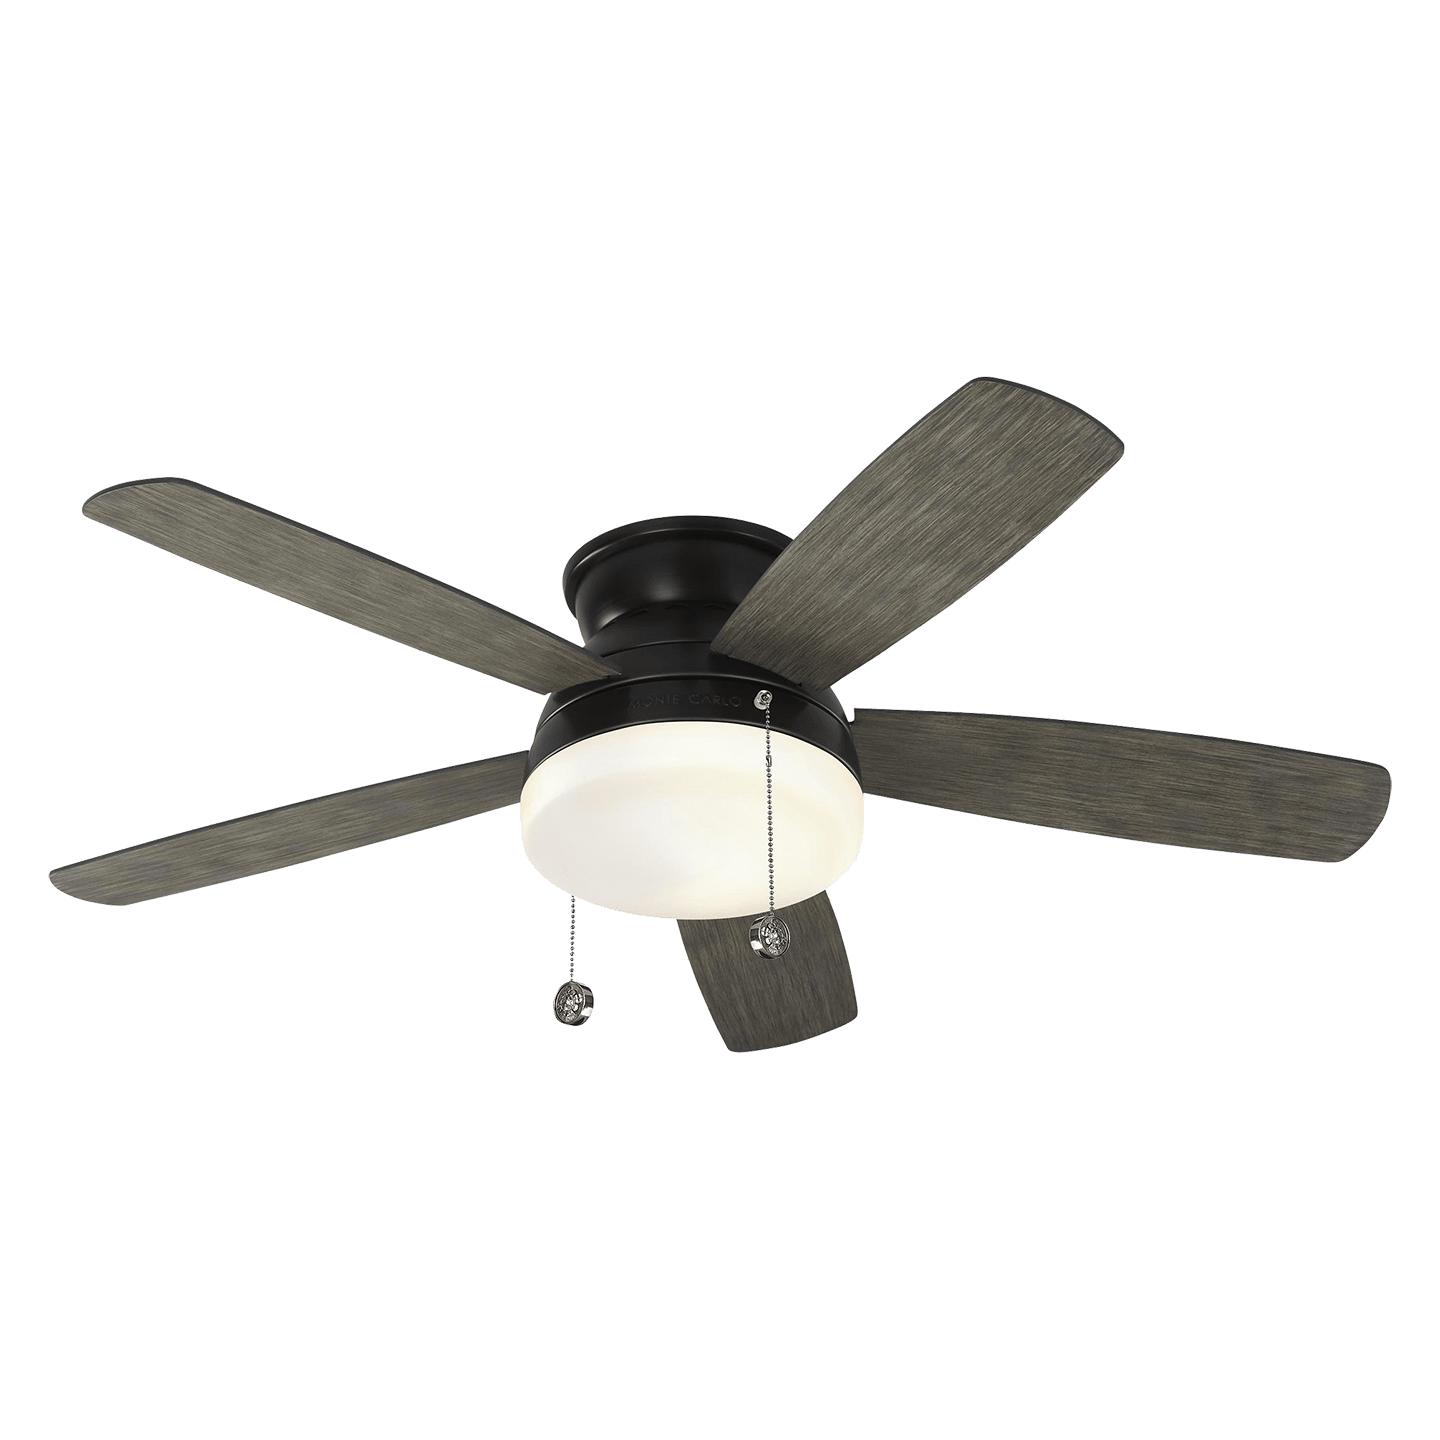 Купить Потолочный вентилятор Traverse 52" Ceiling Fan в интернет-магазине roooms.ru